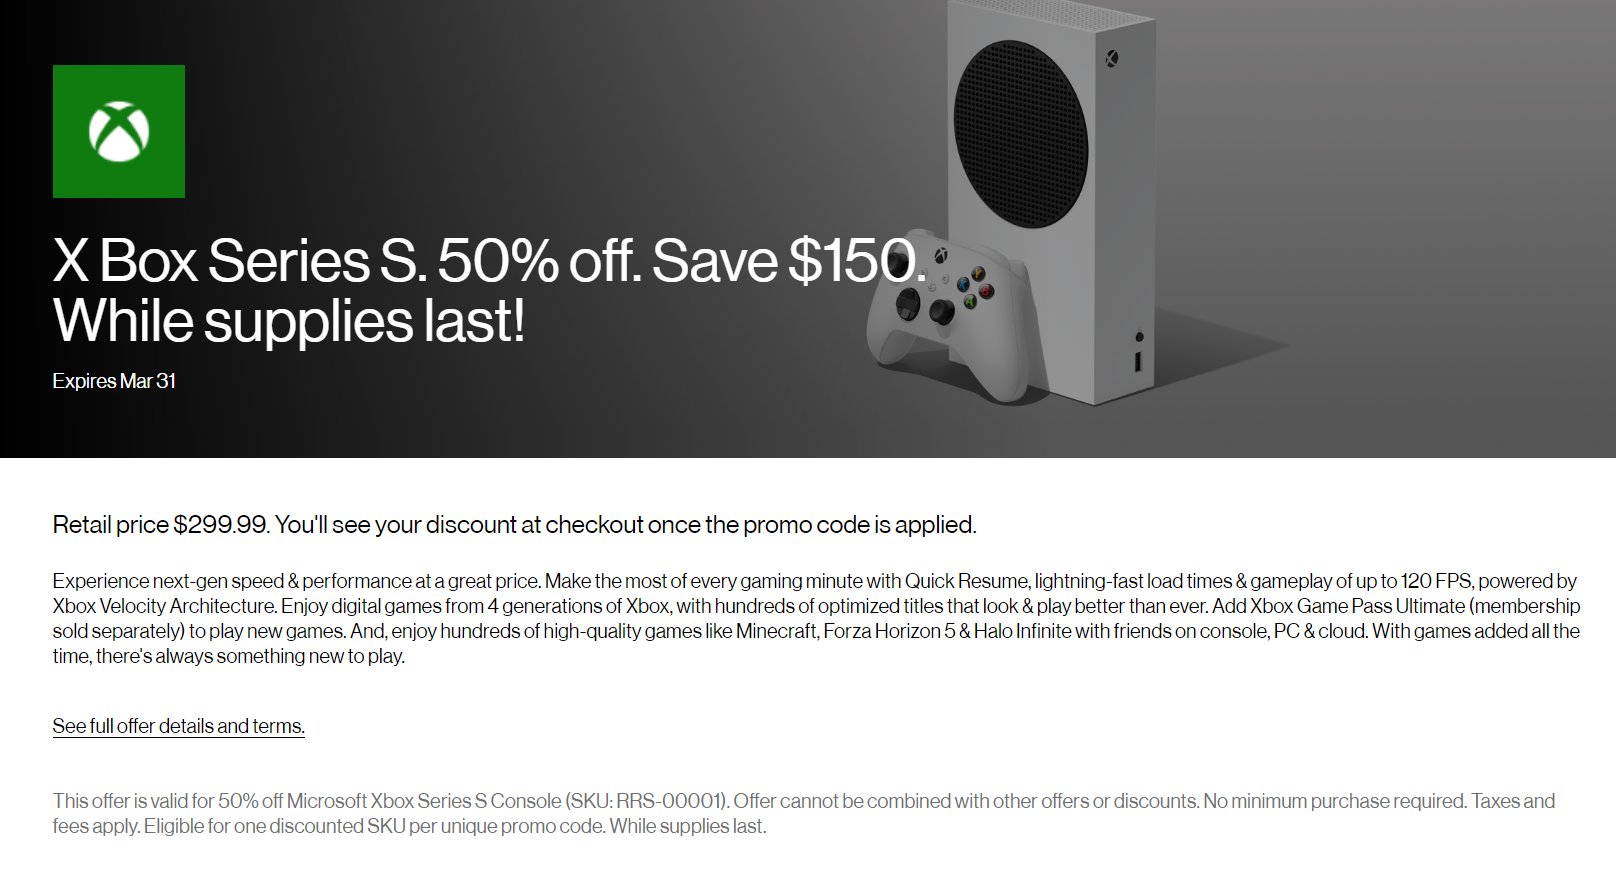 Xbox Series S начали отдавать с максимальной скидкой за половину стоимости - $150: с сайта NEWXBOXONE.RU